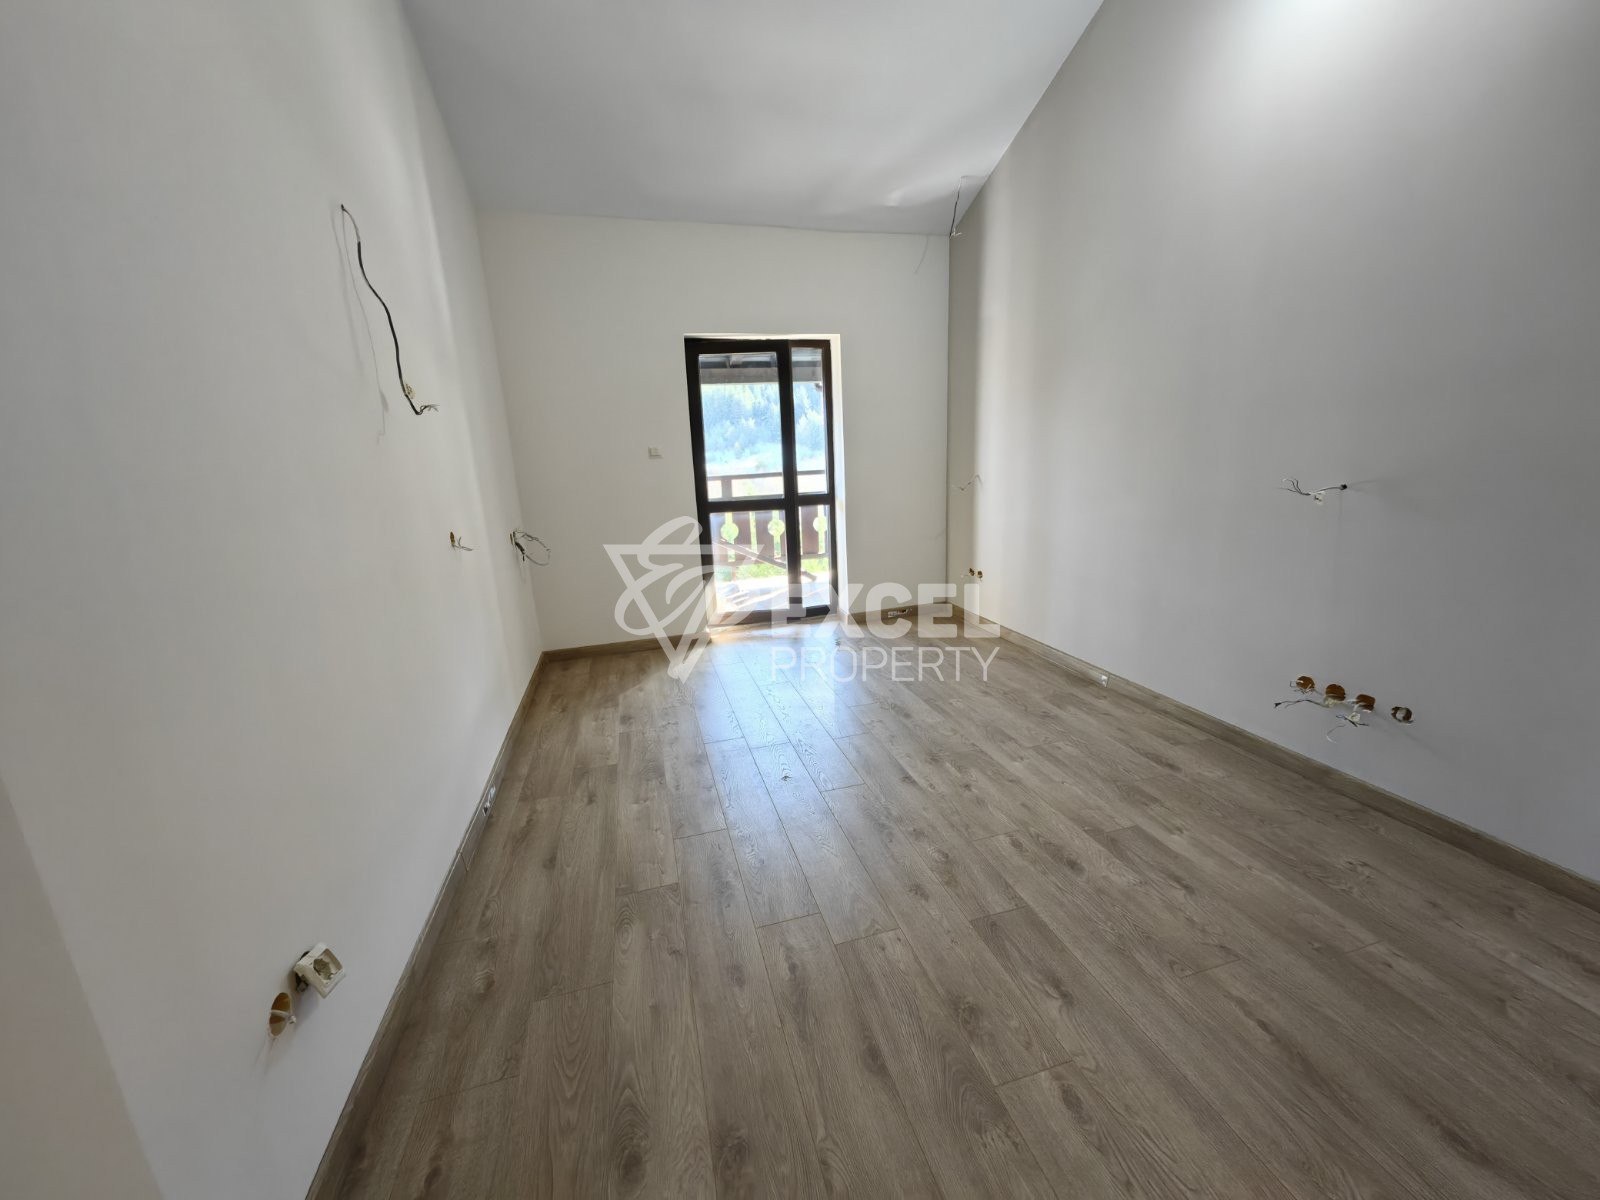 Продается трехкомнатная квартира в низконалоговом доме с потрясающей панорамой Пирин